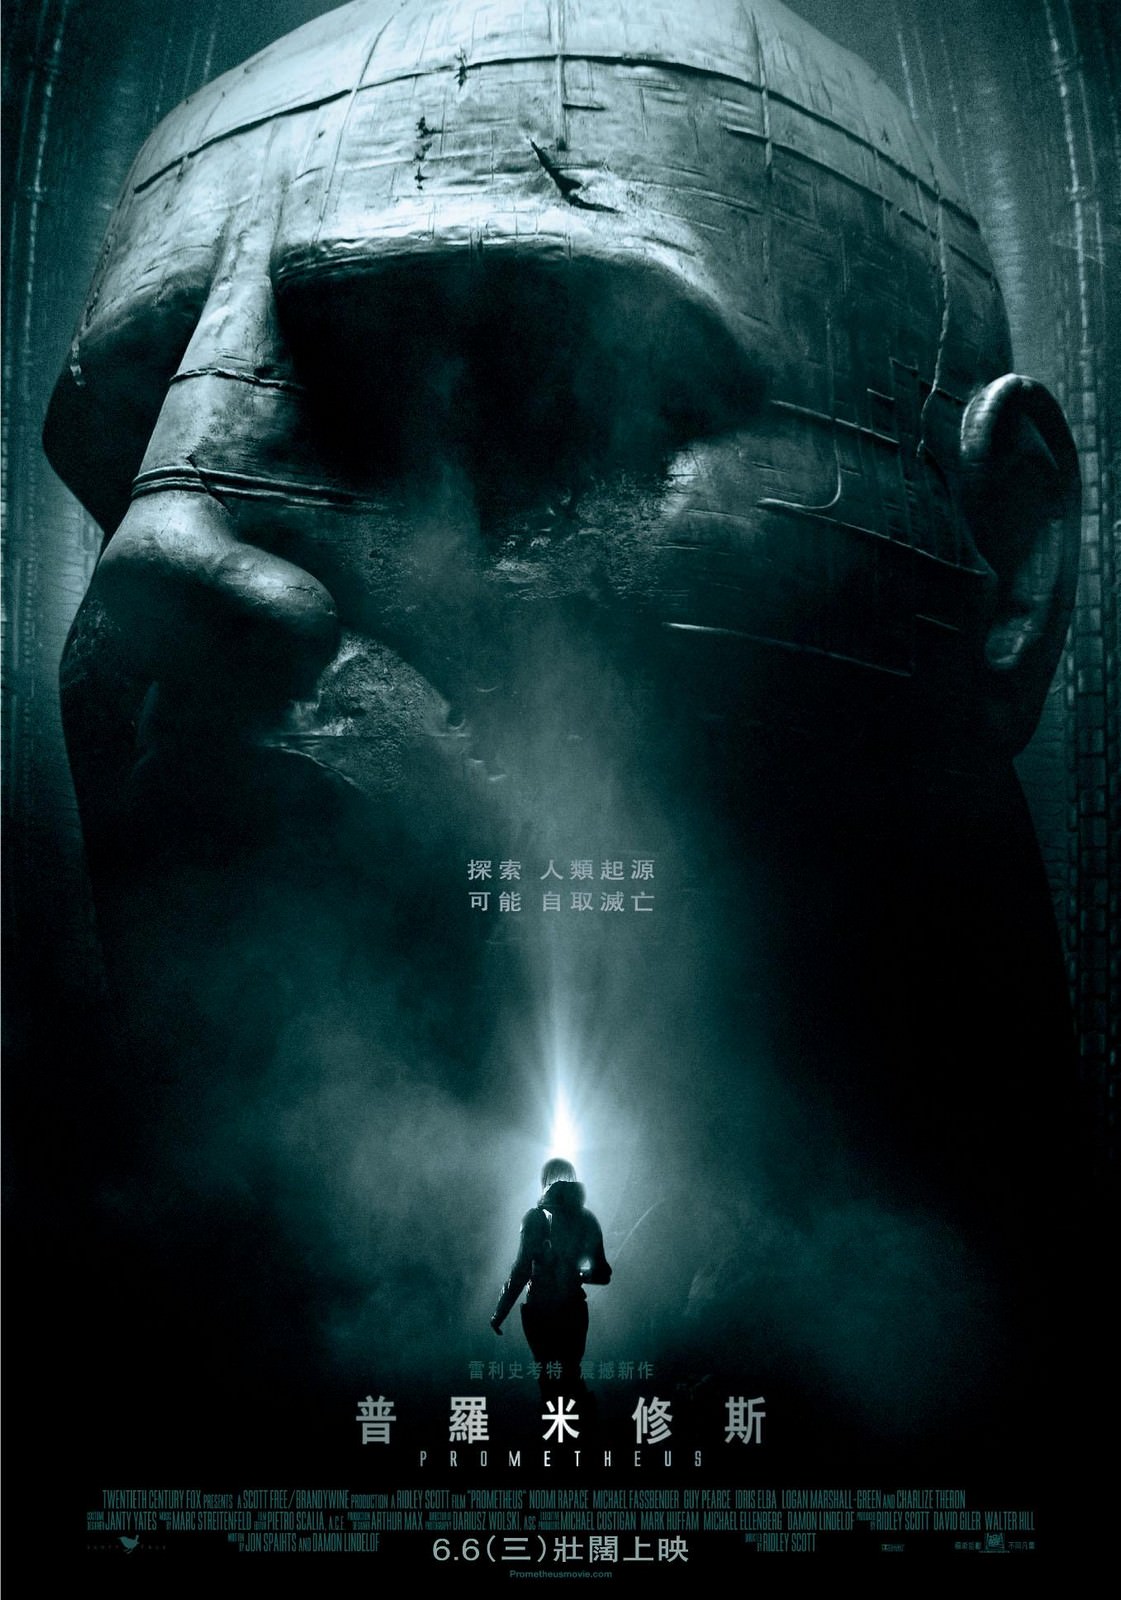 Movie, Prometheus(美國, 2012年) / 普羅米修斯(台灣.香港) / 普罗米修斯(中國), 電影海報, 台灣